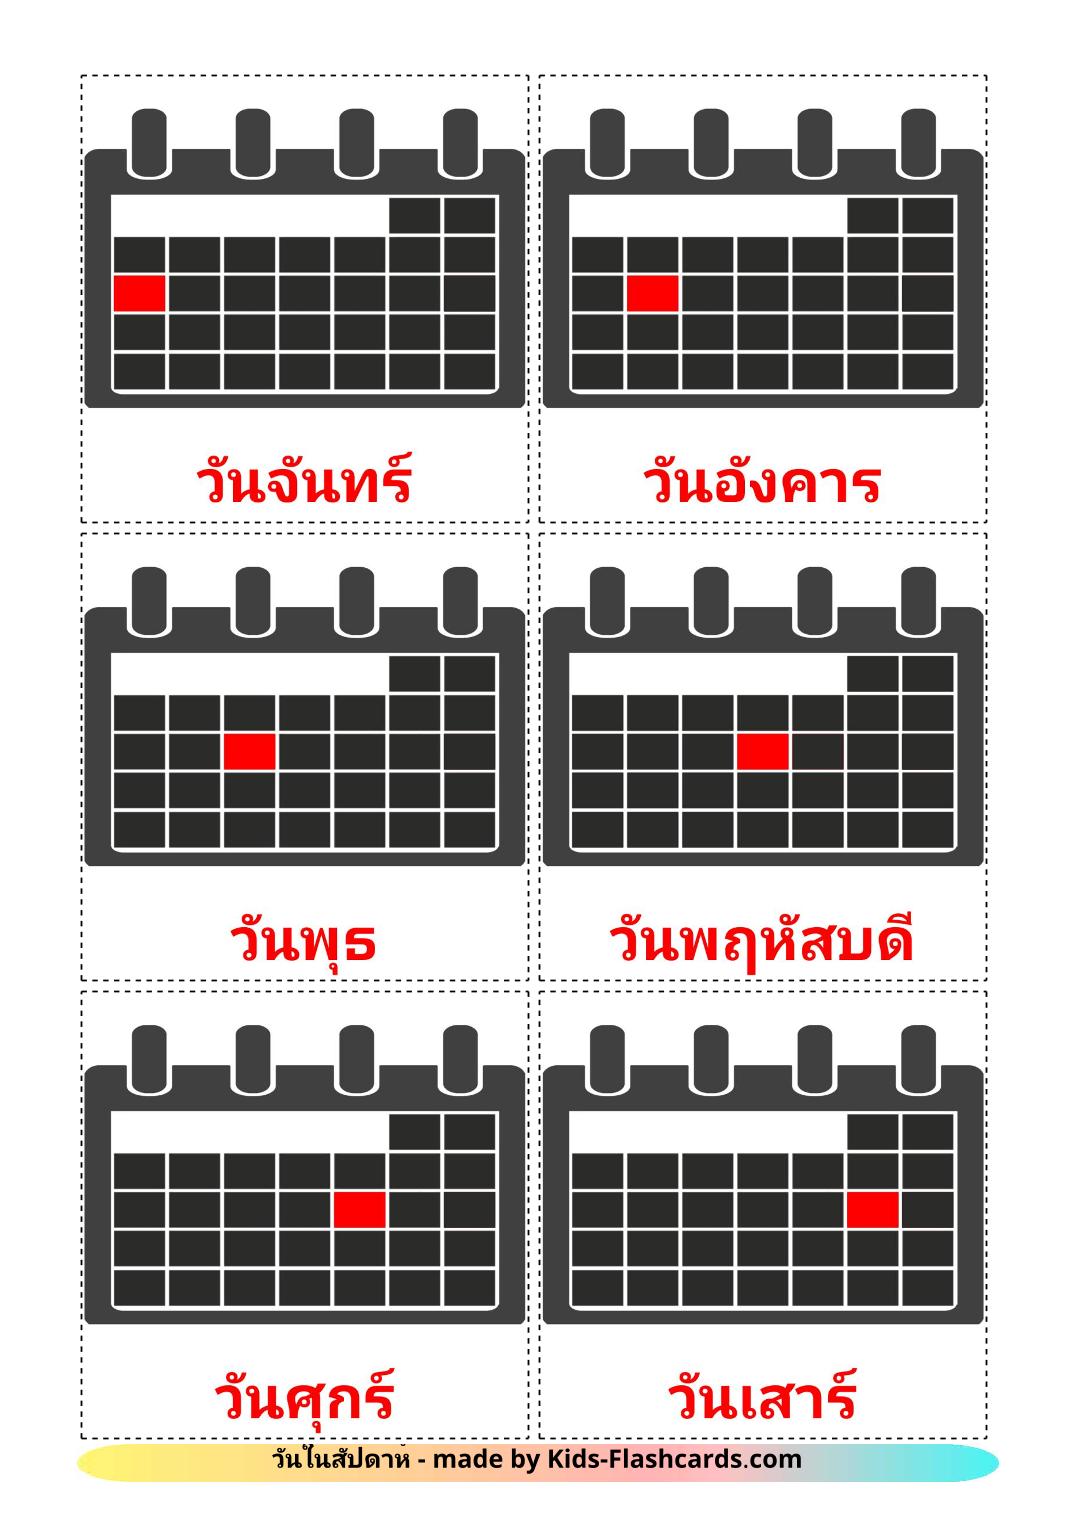 Wochentage - 12 kostenlose, druckbare Thailändisch Flashcards 